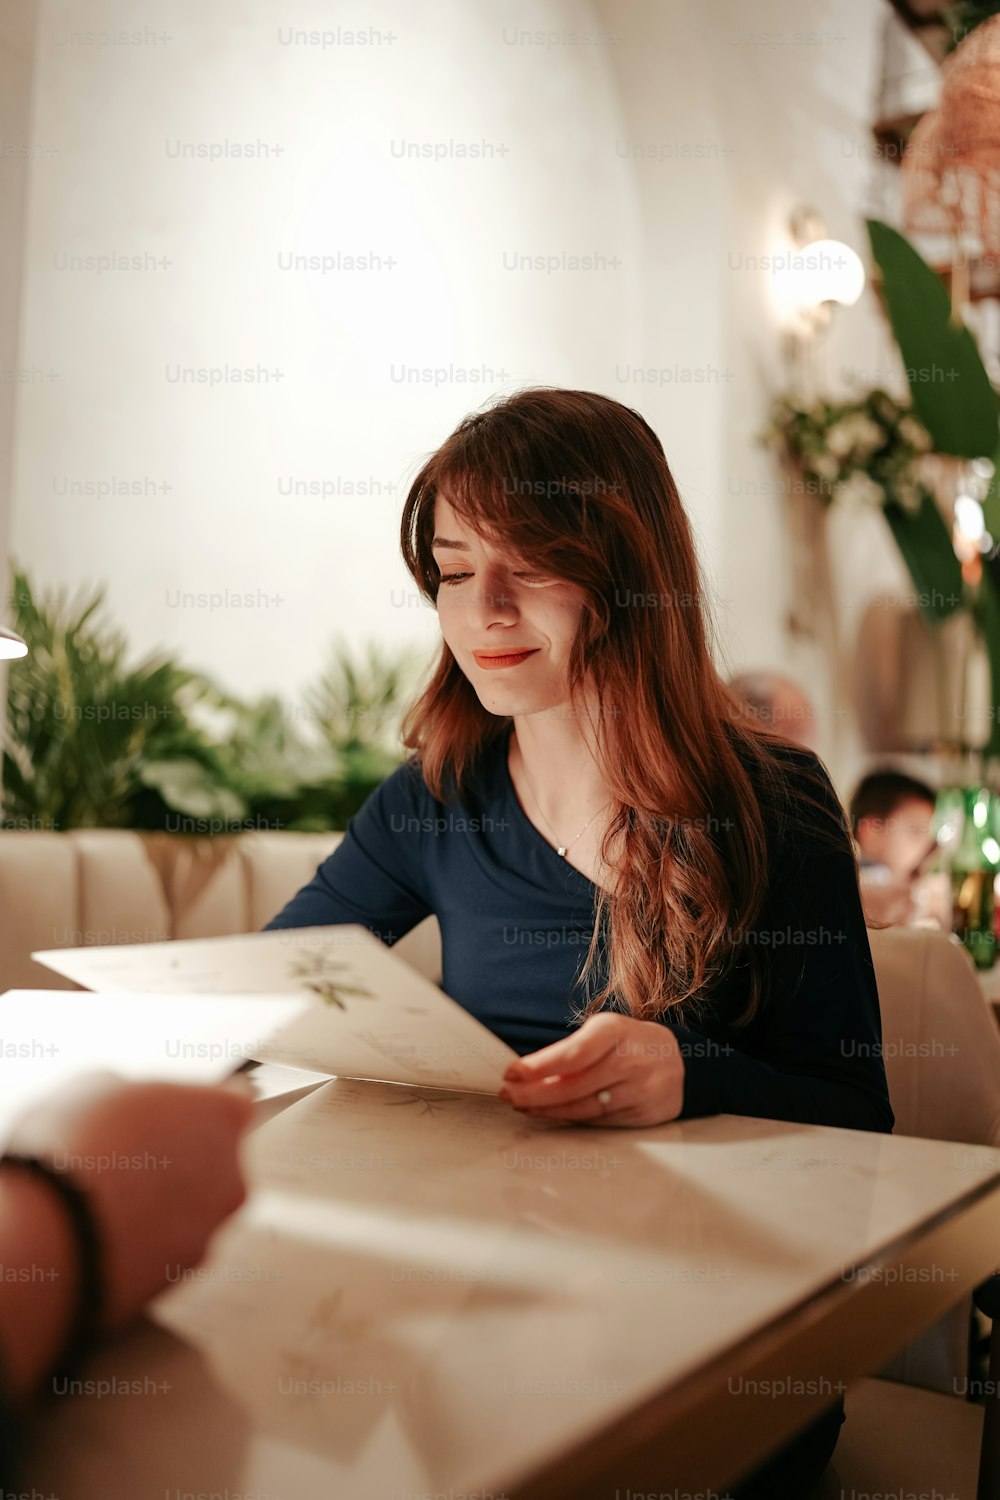 Una mujer sentada en una mesa leyendo un libro